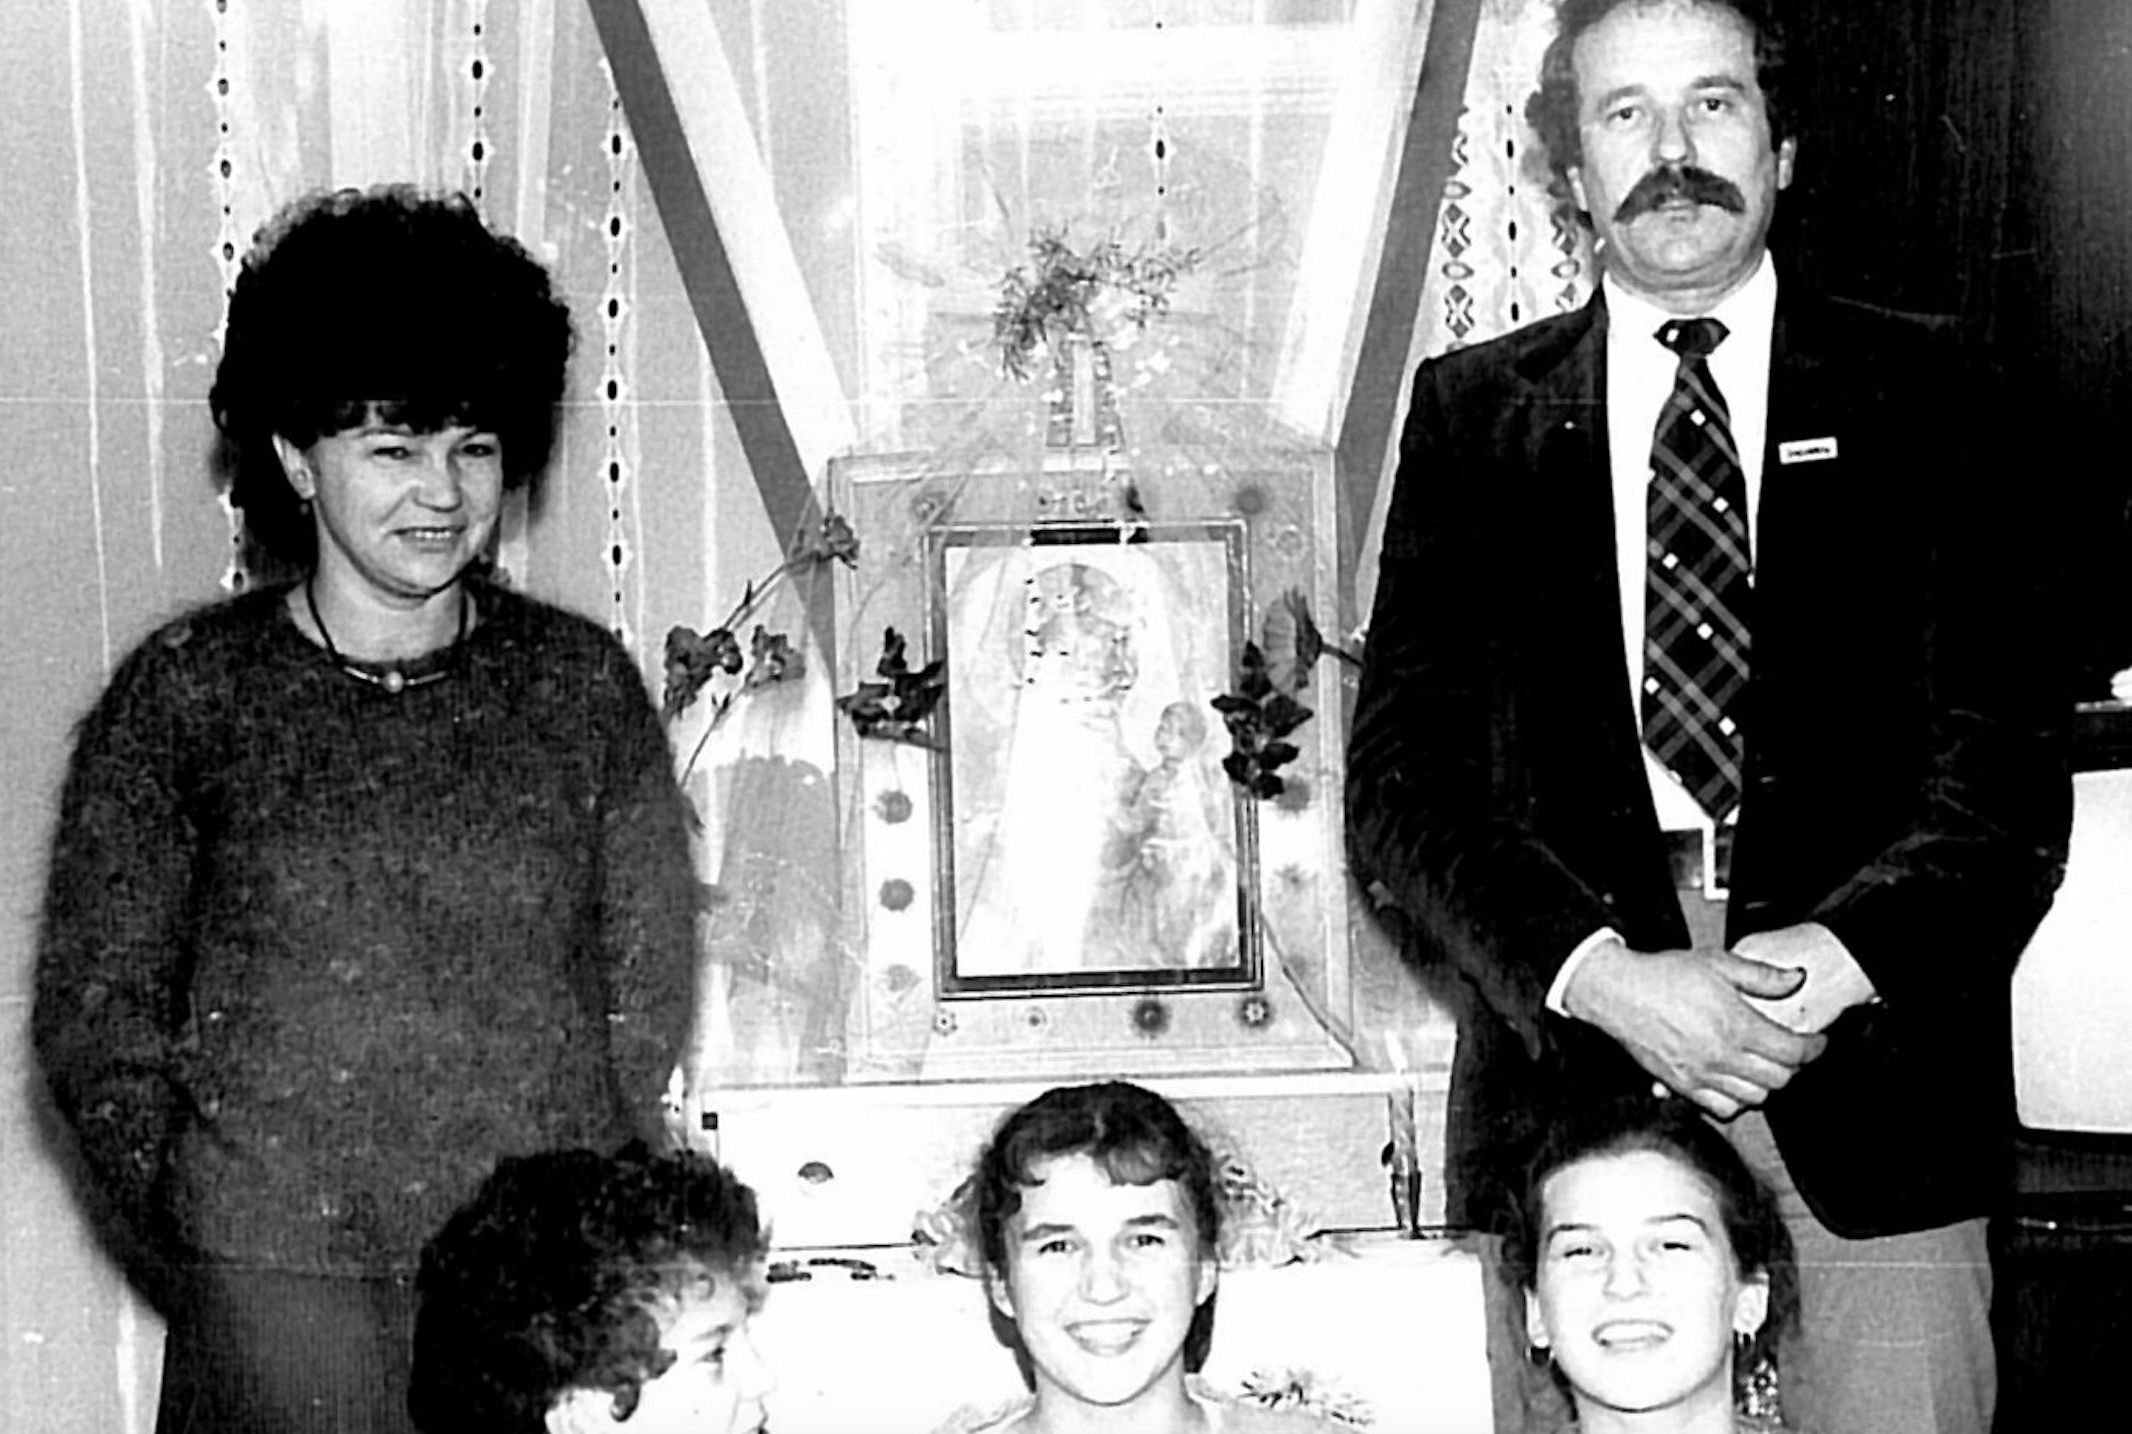 Maria Majdańska z mężem Stanisławem i dziećmi. W roli matki spełniała się równie intensywnie, co w roli patriotycznej nauczycielki